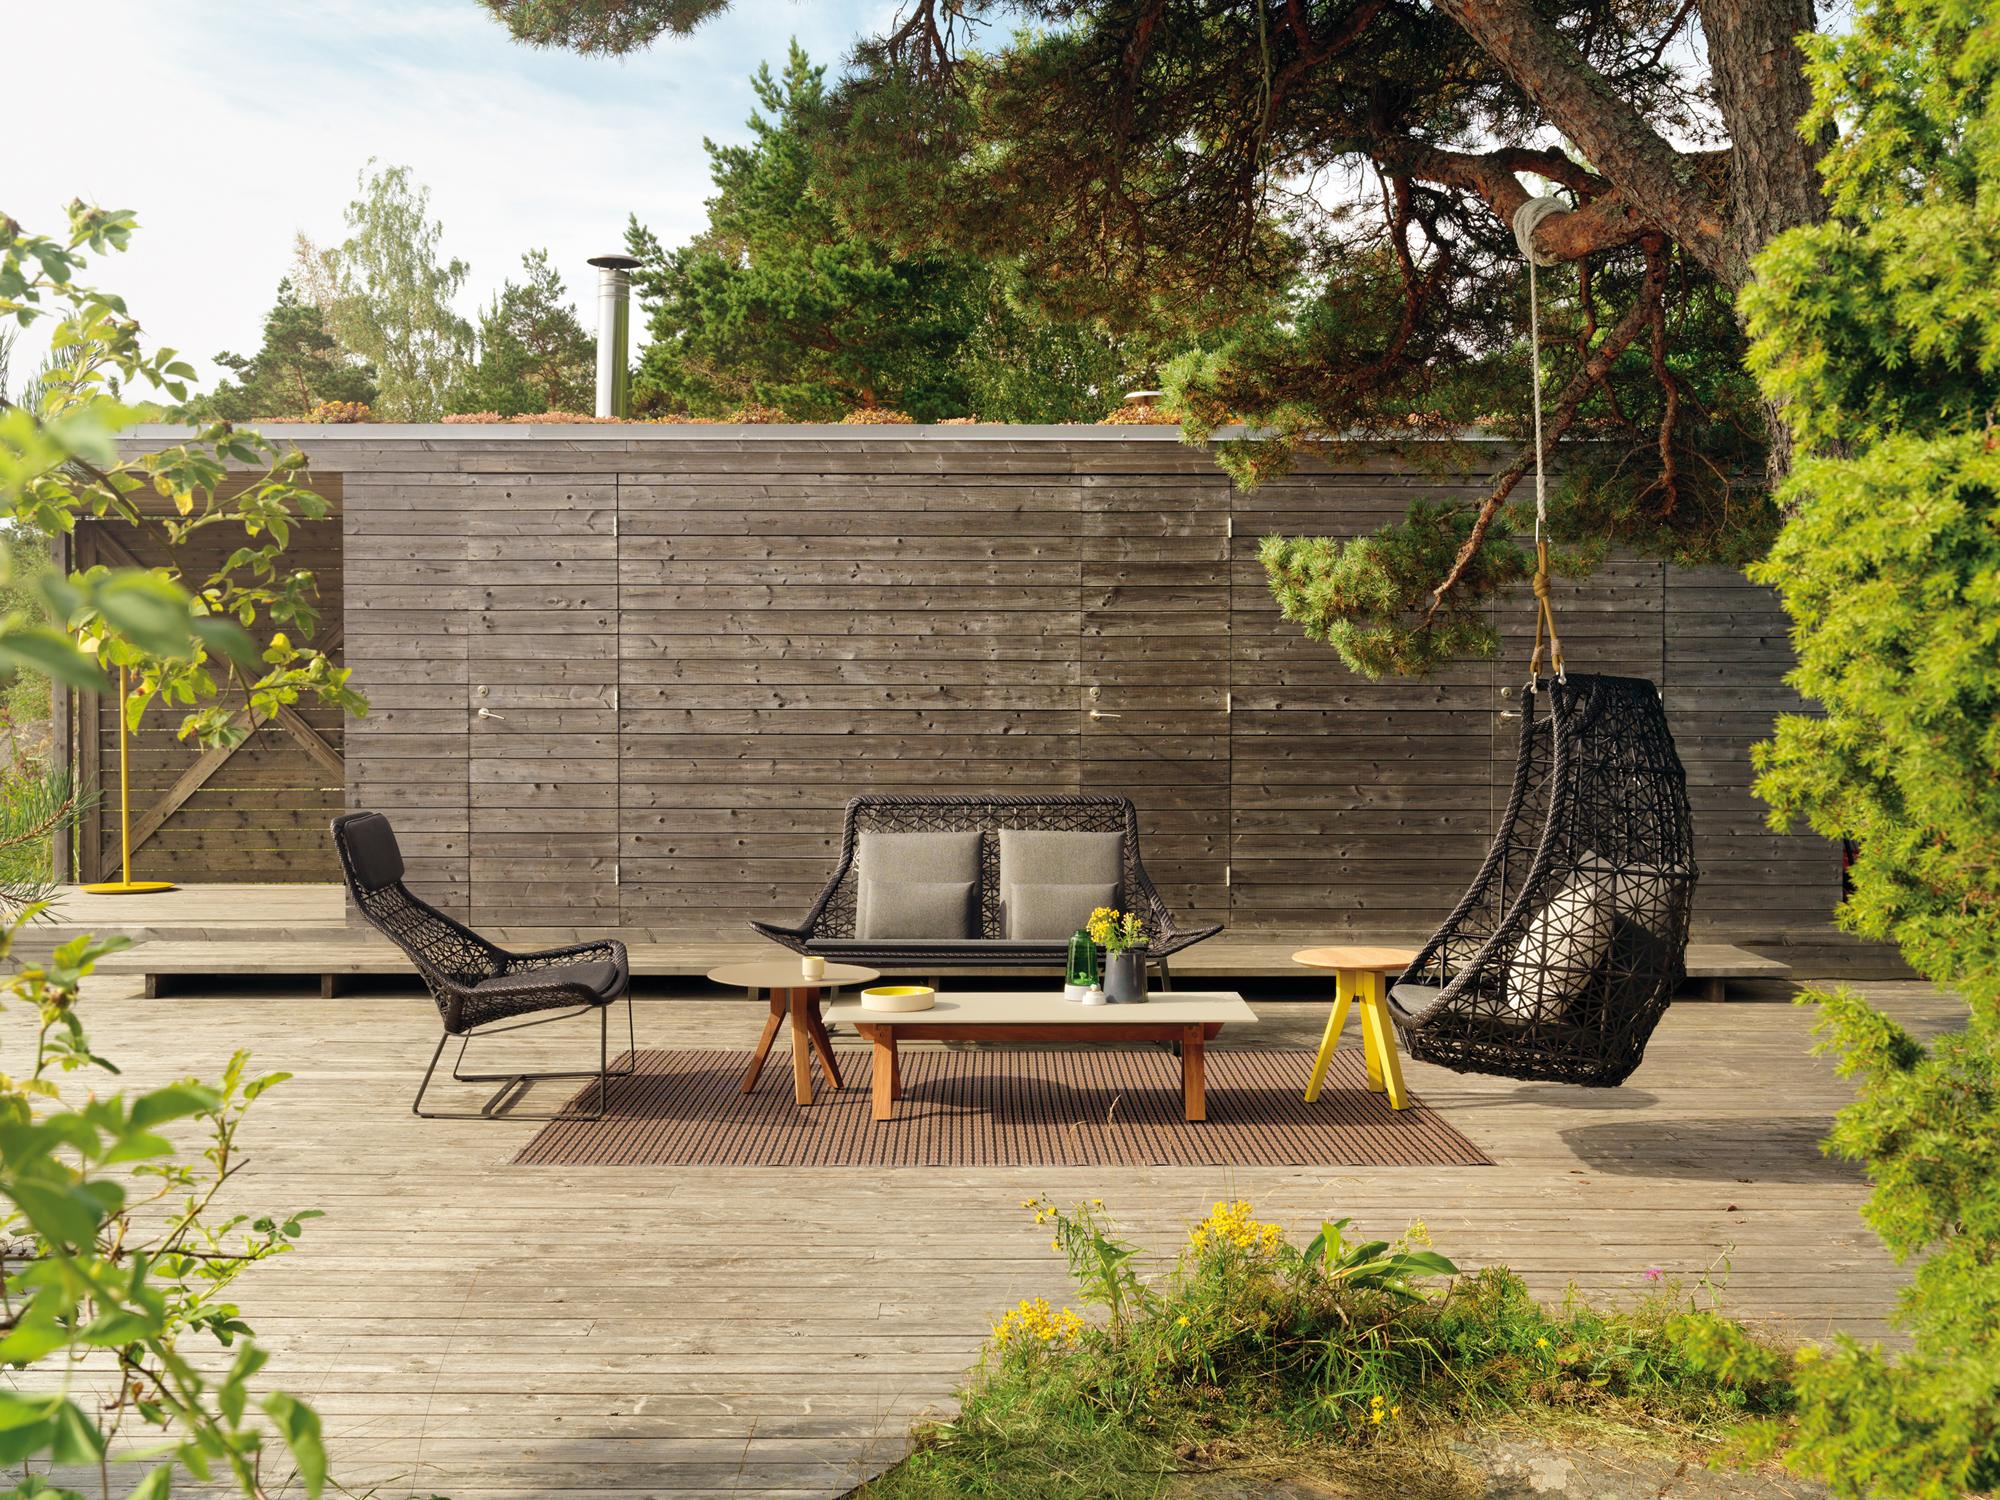 Terrasse aus Holz mit asiatischem Touch #terrasse #sessel #gartenmöbel #sichtschutz #terrassendielen #terrassensichtschutz #sonnenliege #liegestuhl #hängesessel #holzterrasse #terrassenmöbel ©Kettal